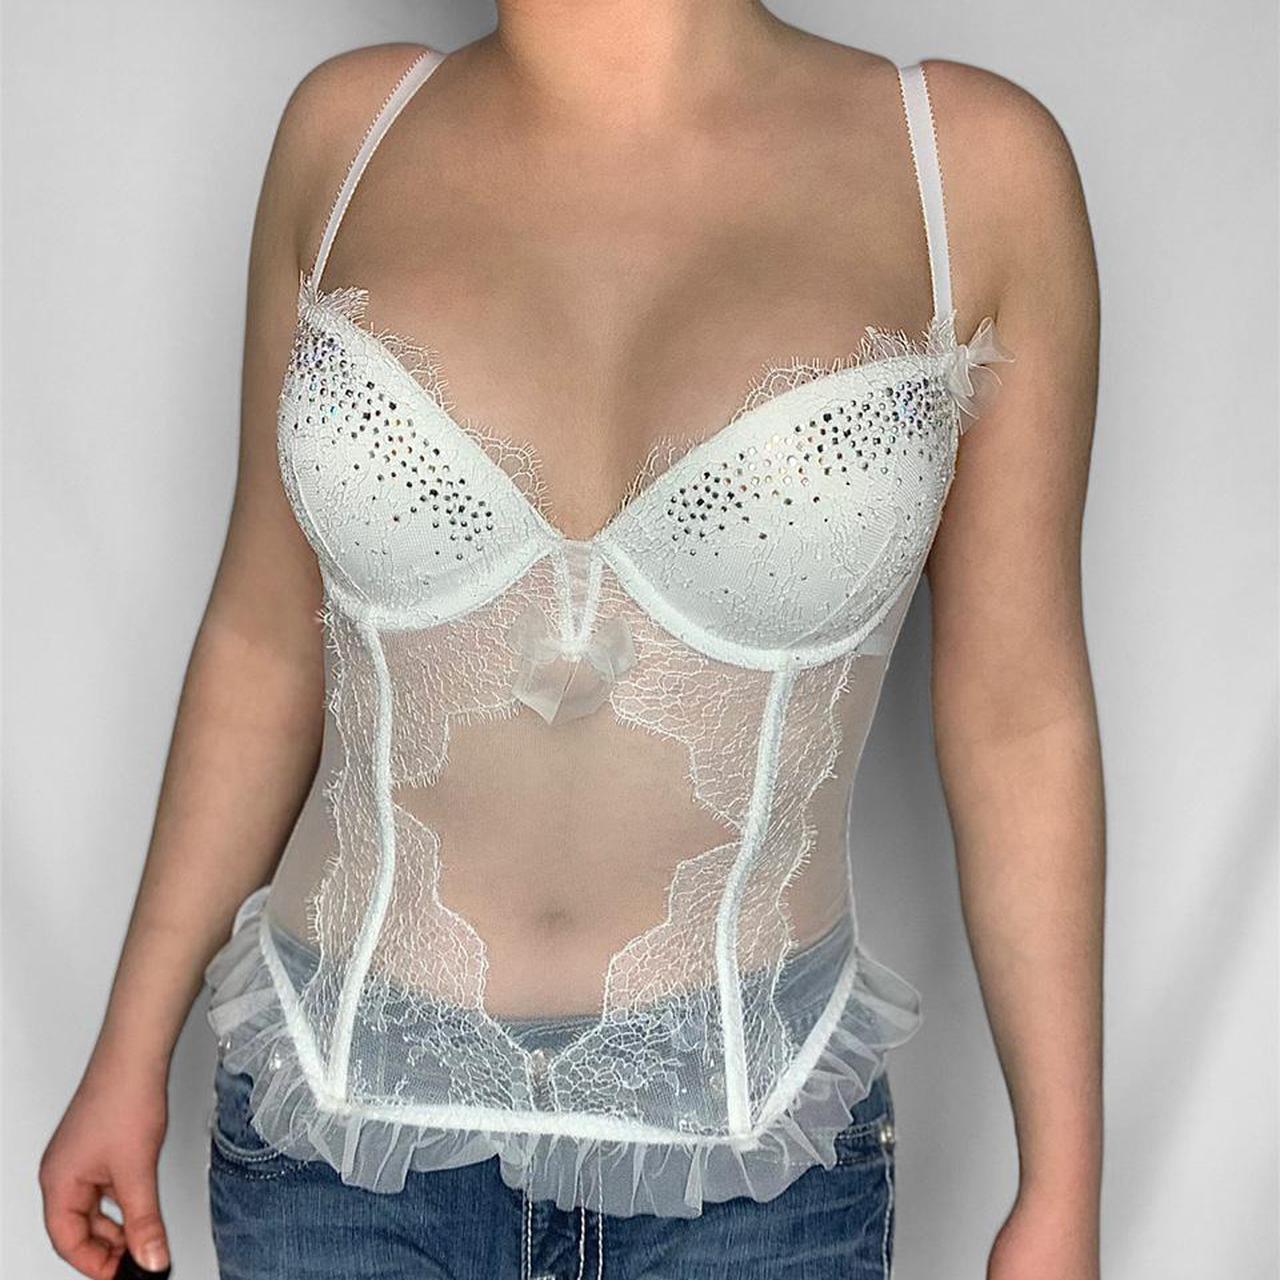 VICTORIA’S SECRET vintage y2k white mesh lace corset lingerie top